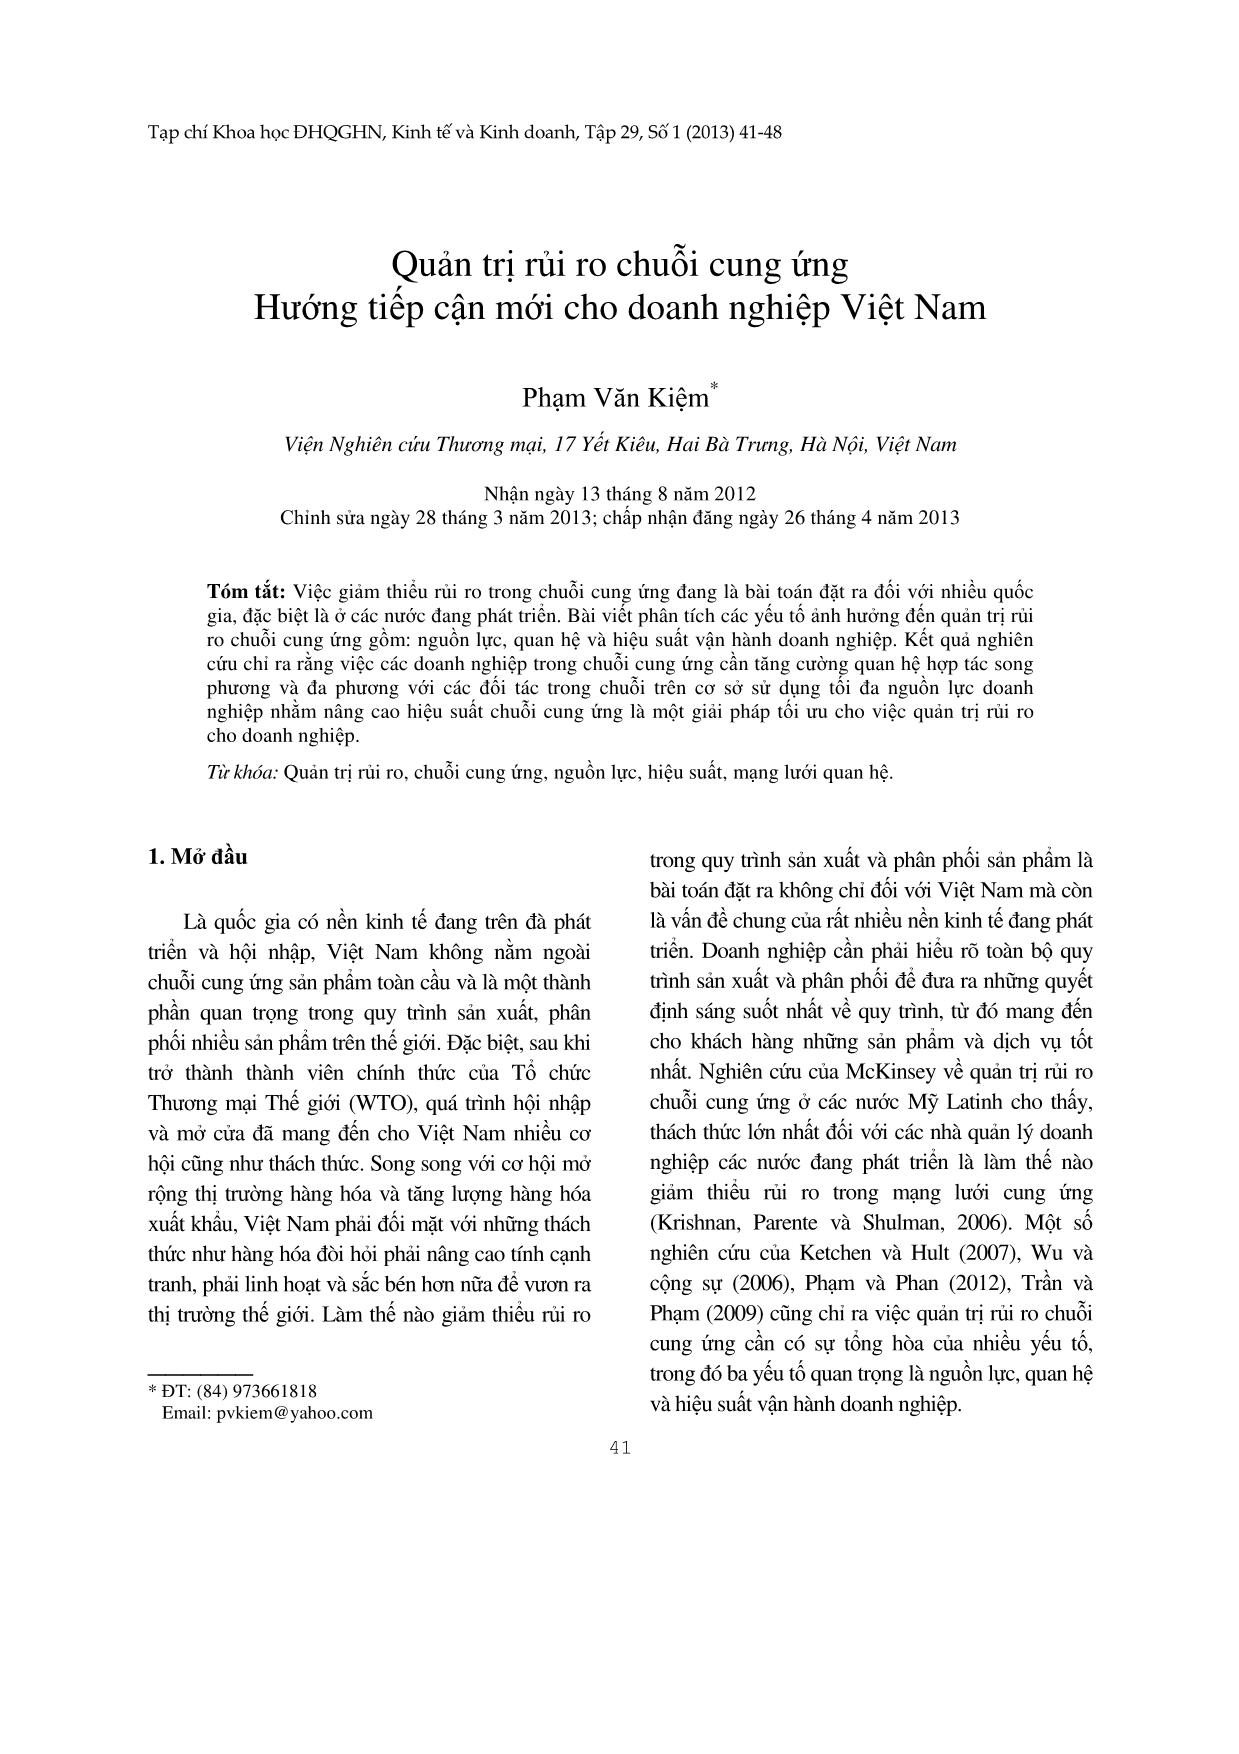 Quản trị rủi ro chuỗi cung ứng Hướng tiếp cận mới cho doanh nghiệp Việt Nam trang 1